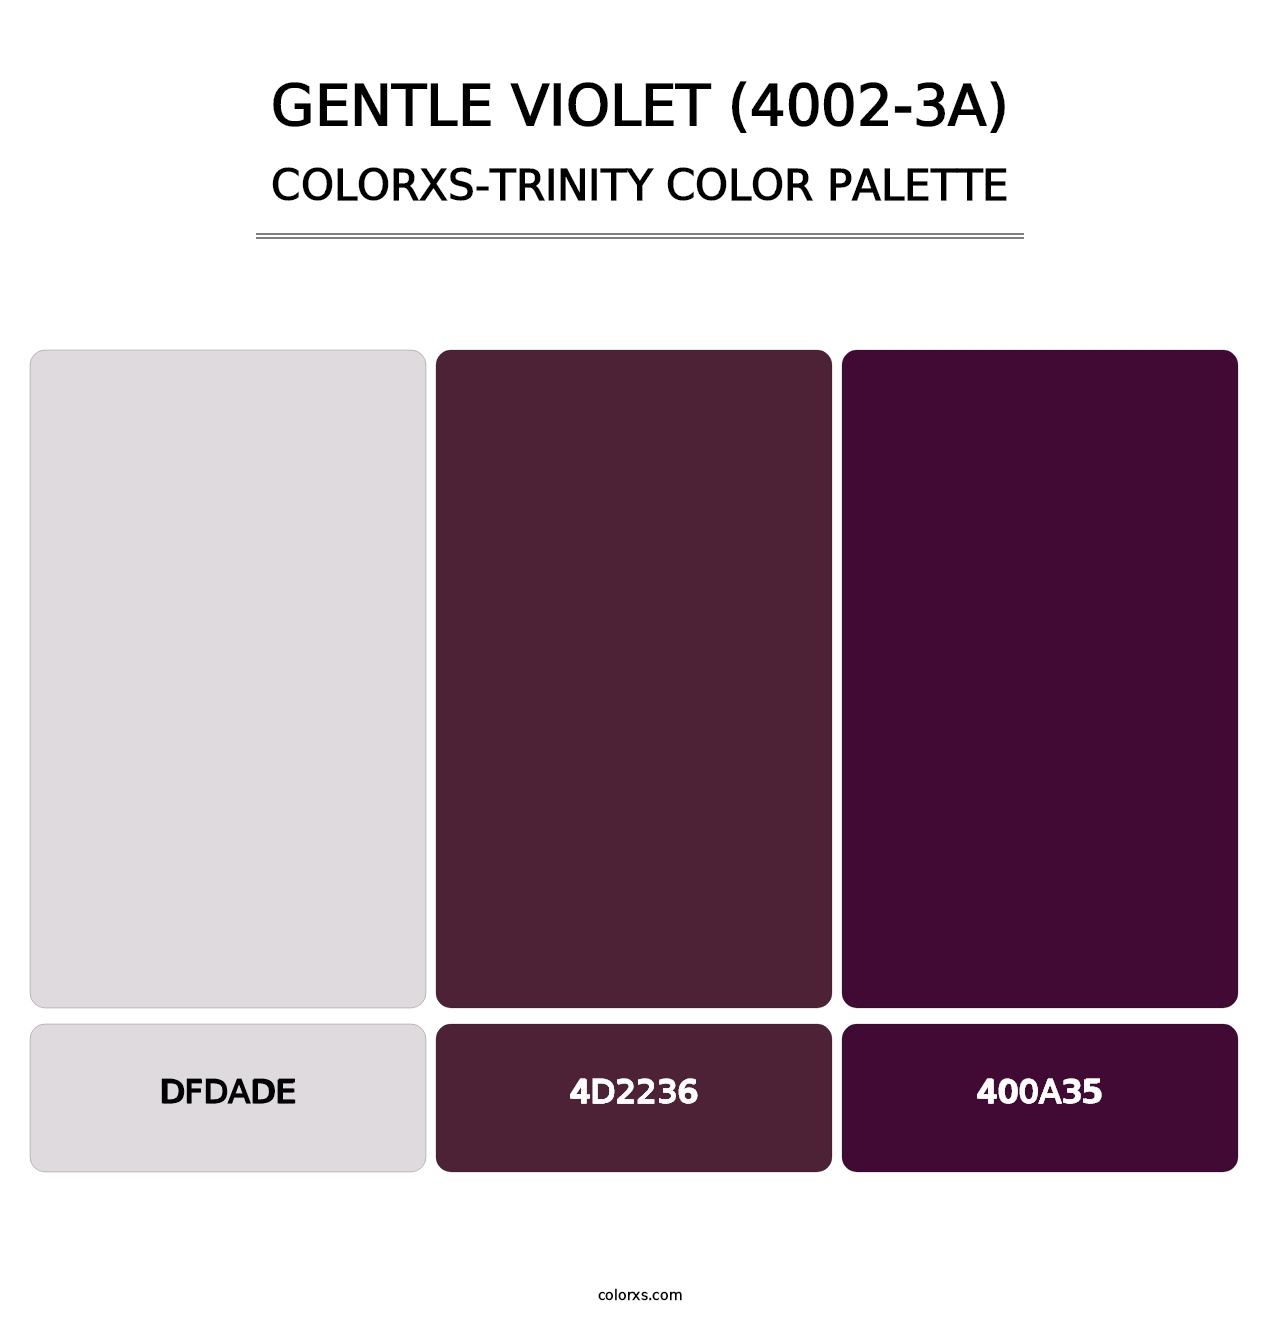 Gentle Violet (4002-3A) - Colorxs Trinity Palette